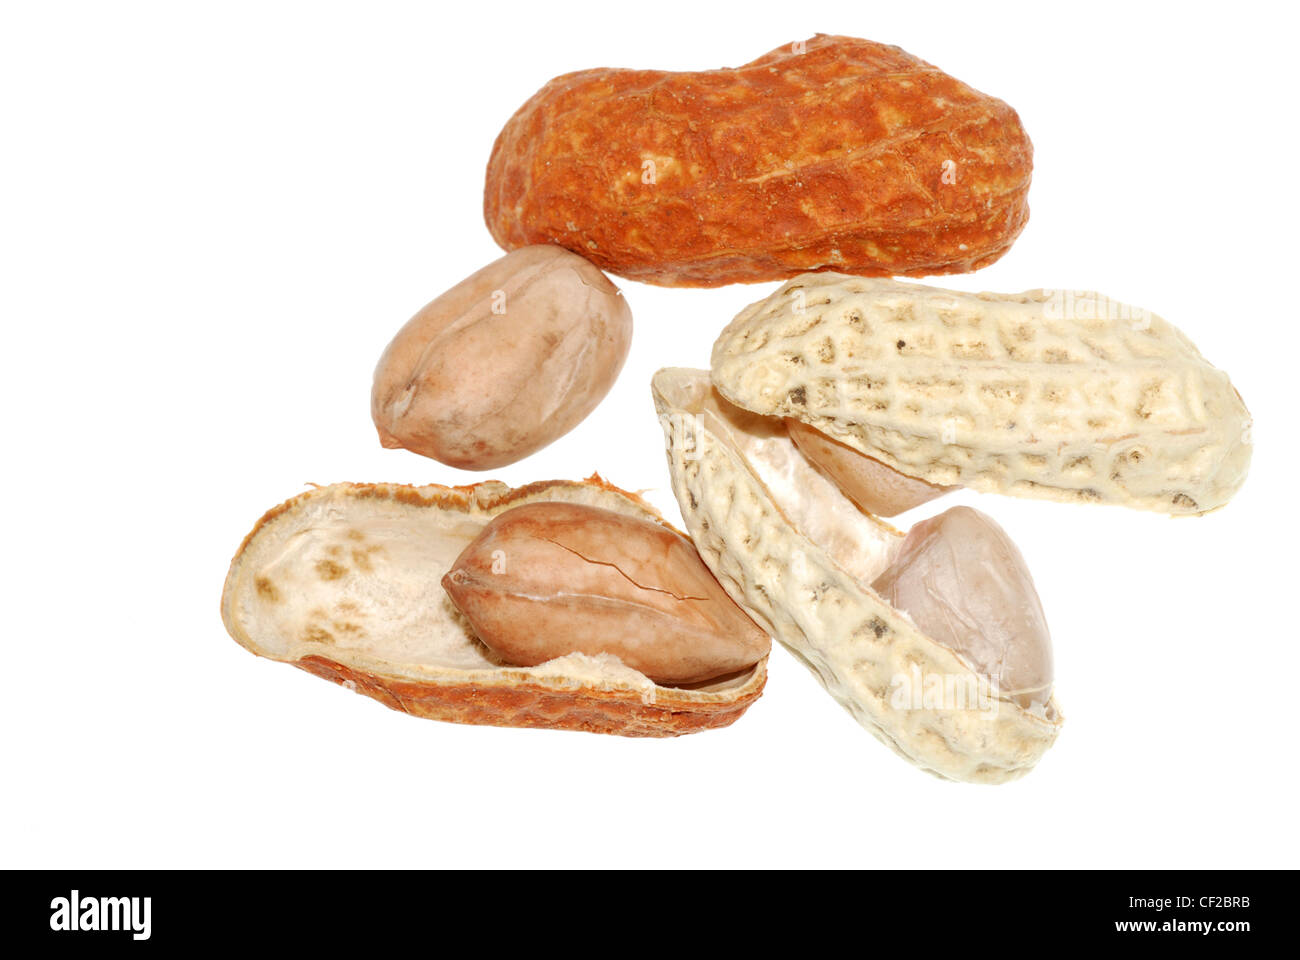 peanut isolated on white background Stock Photo